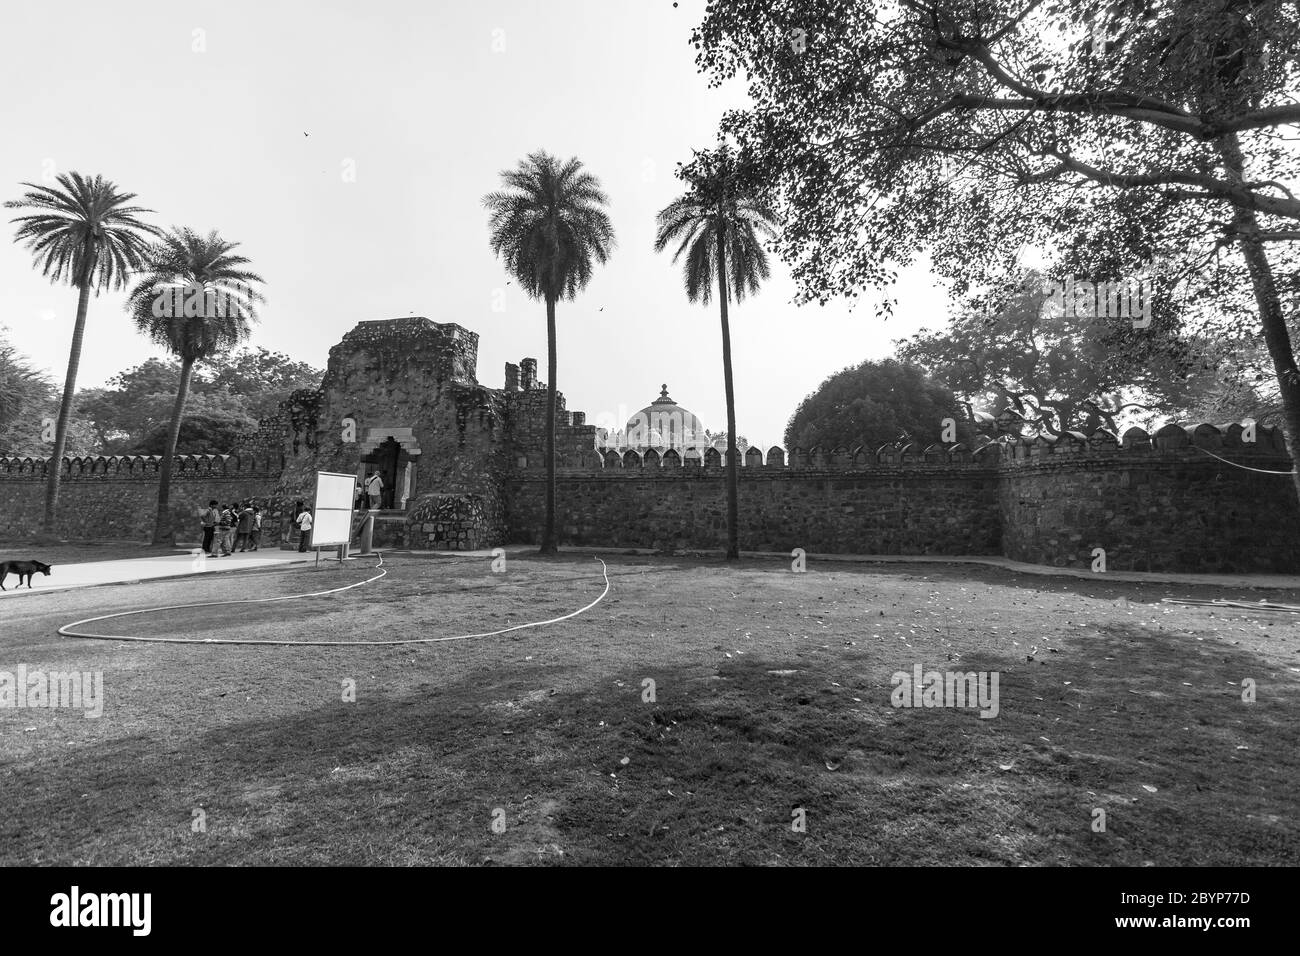 Humayun's Tomb, Delhi - Eintrittssicht auf das erste Gartengrab auf dem indischen Subkontinent. Das Grab ist ein hervorragendes Beispiel für persische Architektur. Stockfoto